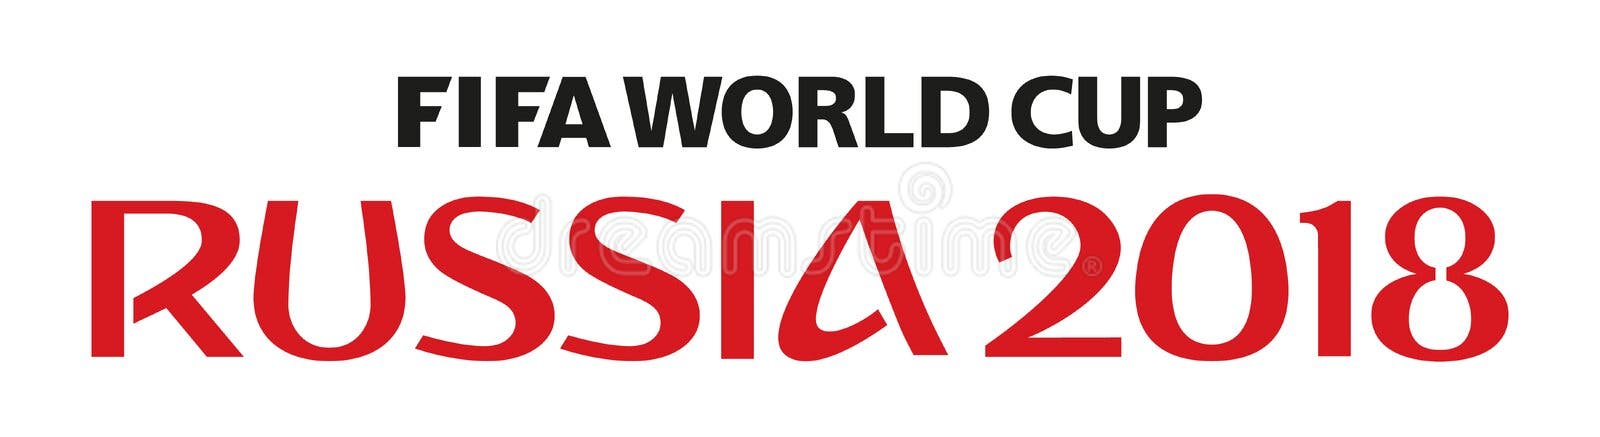 MOSCOU, RÚSSIA, Junho-julho De 2018 - Rússia Logotipo De 2018 Campeonatos  Do Mundo E a Bandeira De Rússia Foto de Stock Editorial - Ilustração de  camisa, jogo: 102929723